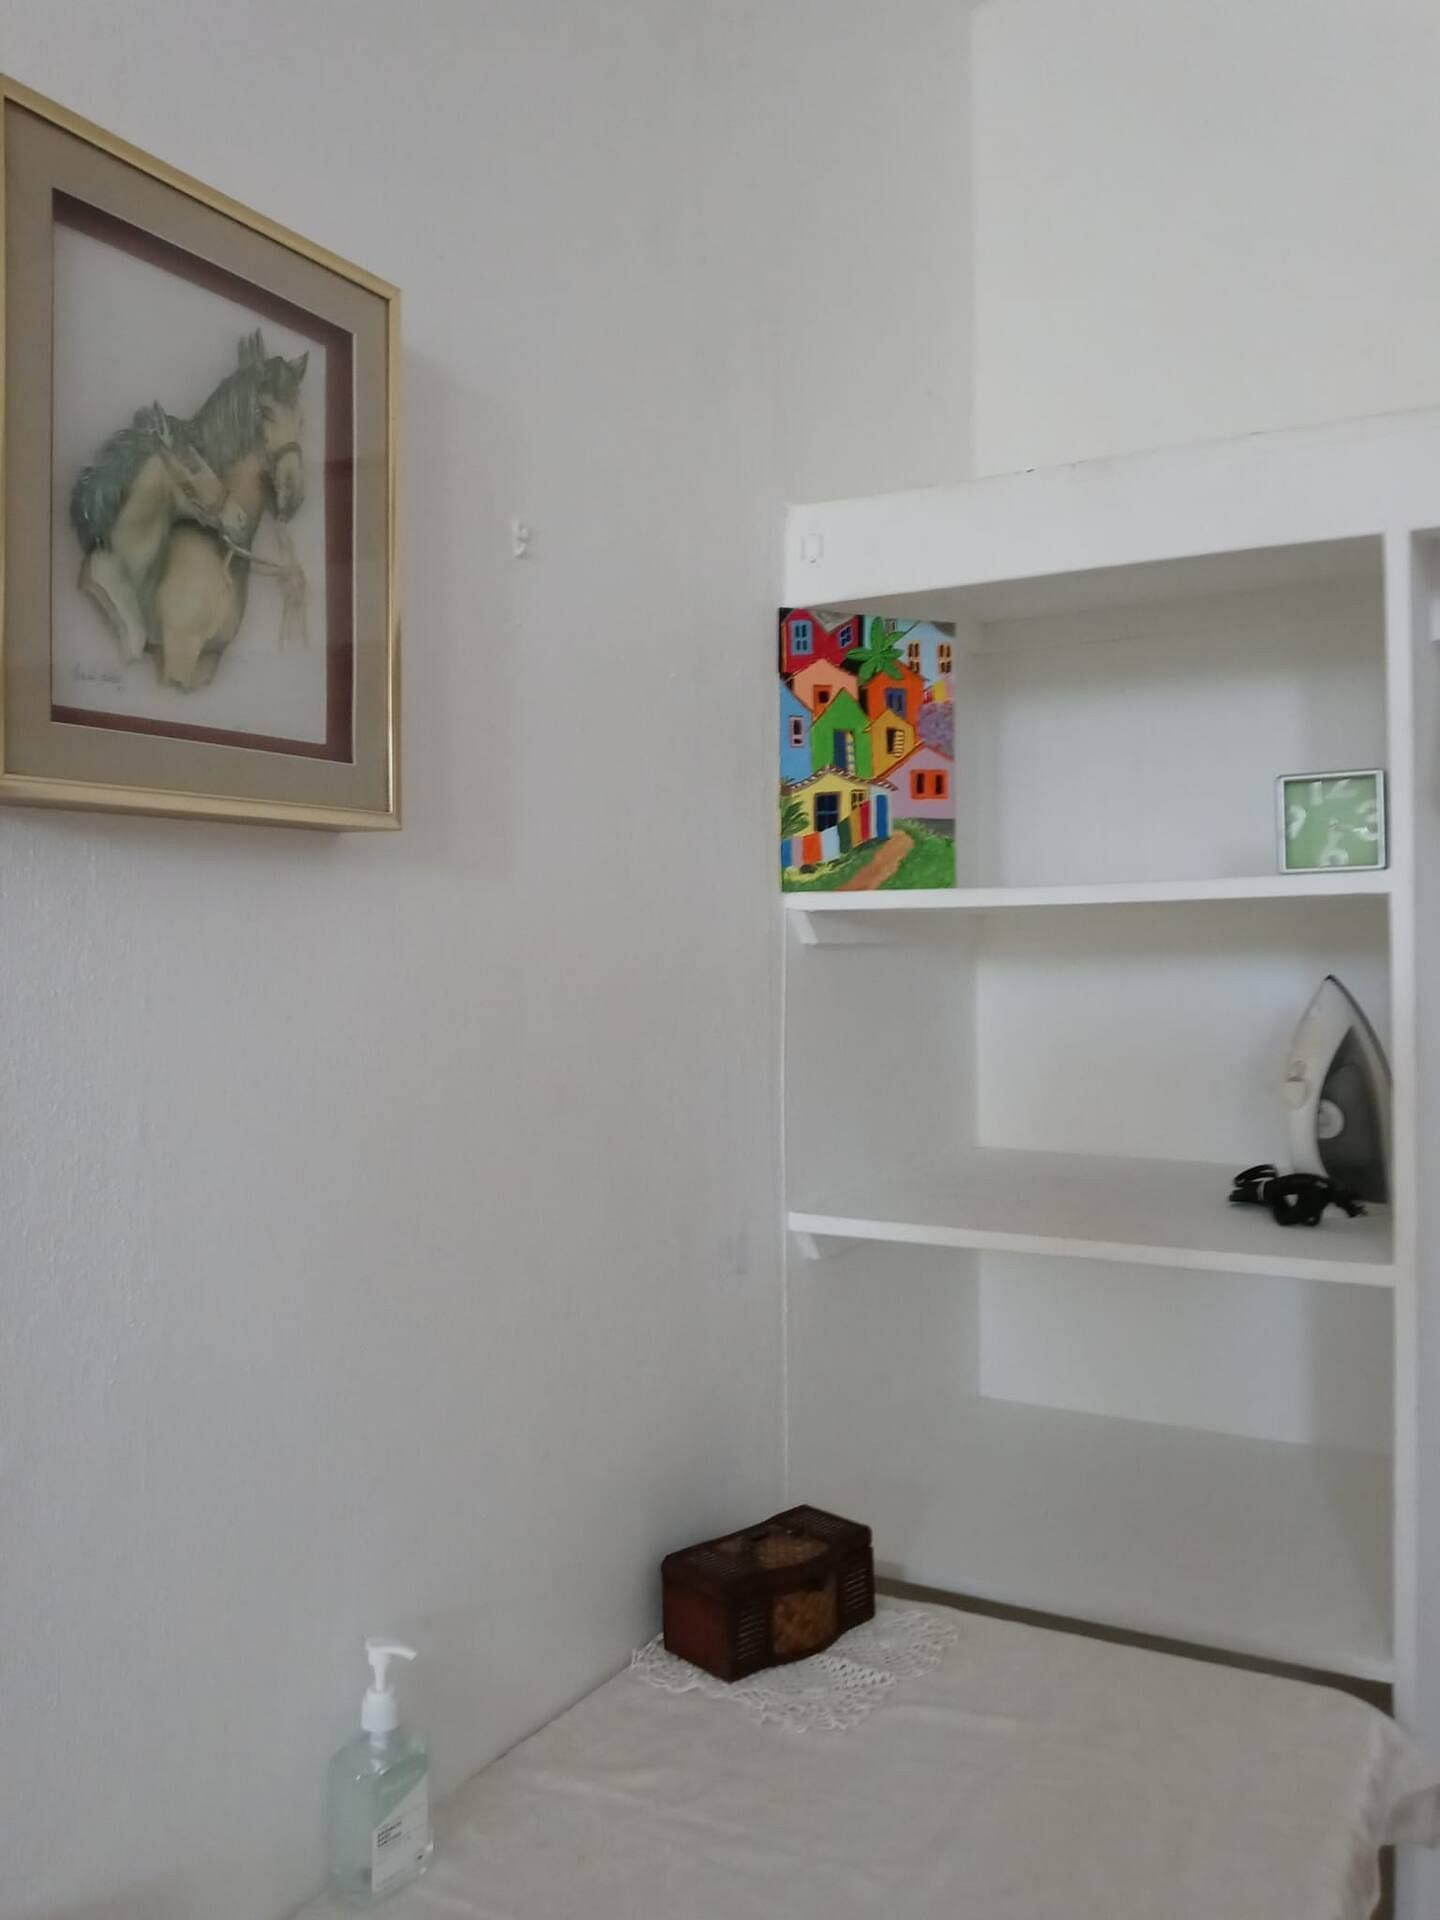 JWguest Apartment at San Juan, San Juan | LasLomas 4B Bunkers Bedroom #2 | Jwbnb no brobnb 12